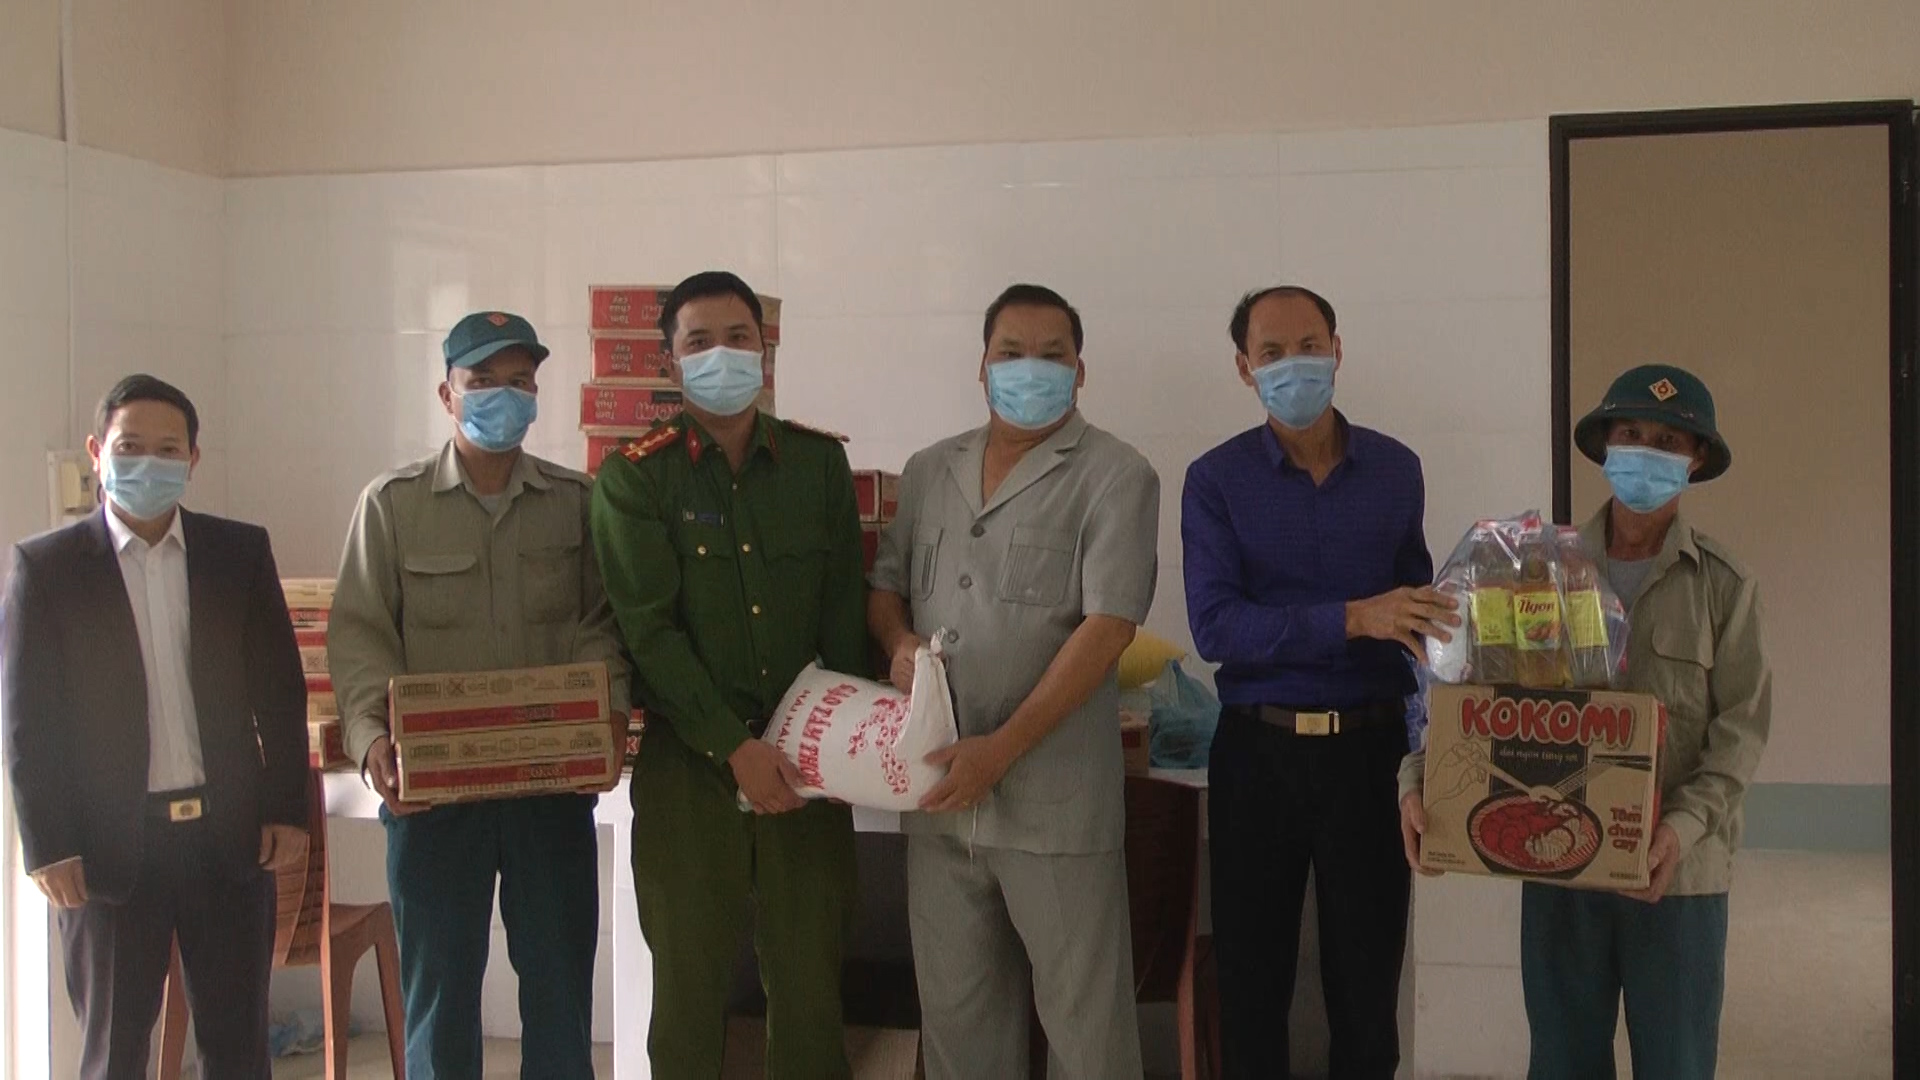 UBMT Tổ quốc Việt Nam huyện Yên Minh tặng quà cho người cách ly và lực lượng đang thực hiện nhiệm vụ tại khu cách ly